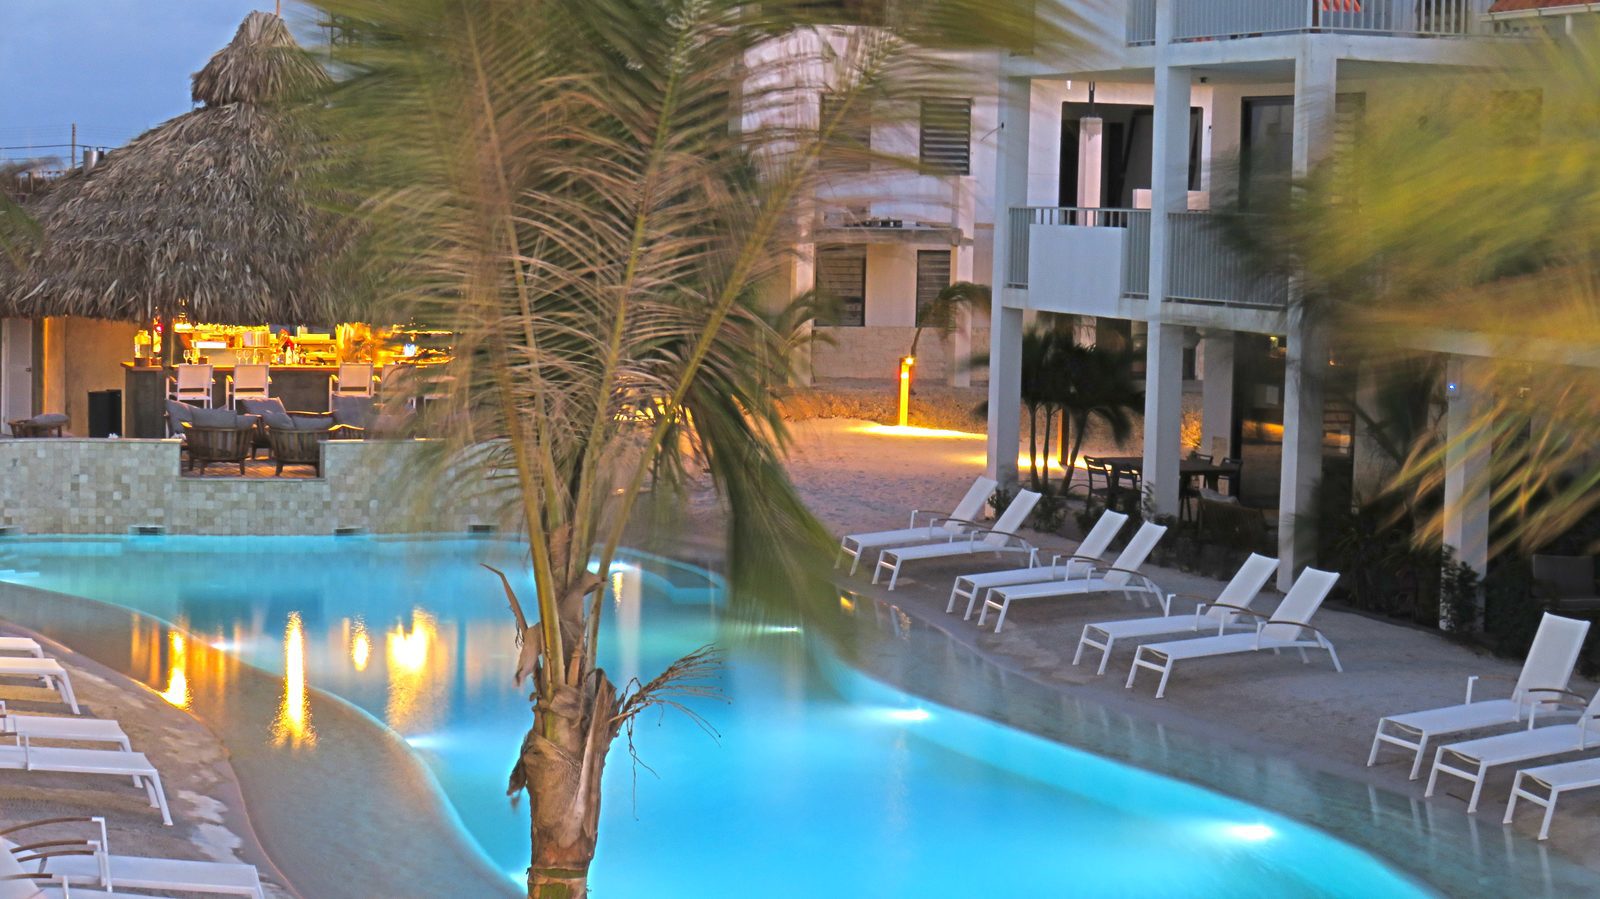 Das Resort Bonaire bietet im Park vielfältige Einrichtungen, die Sie als Gast nutzen dürfen. Leihen Sie sich eine Schnorchelausrüstung oder schwimmen in unserem Pool!